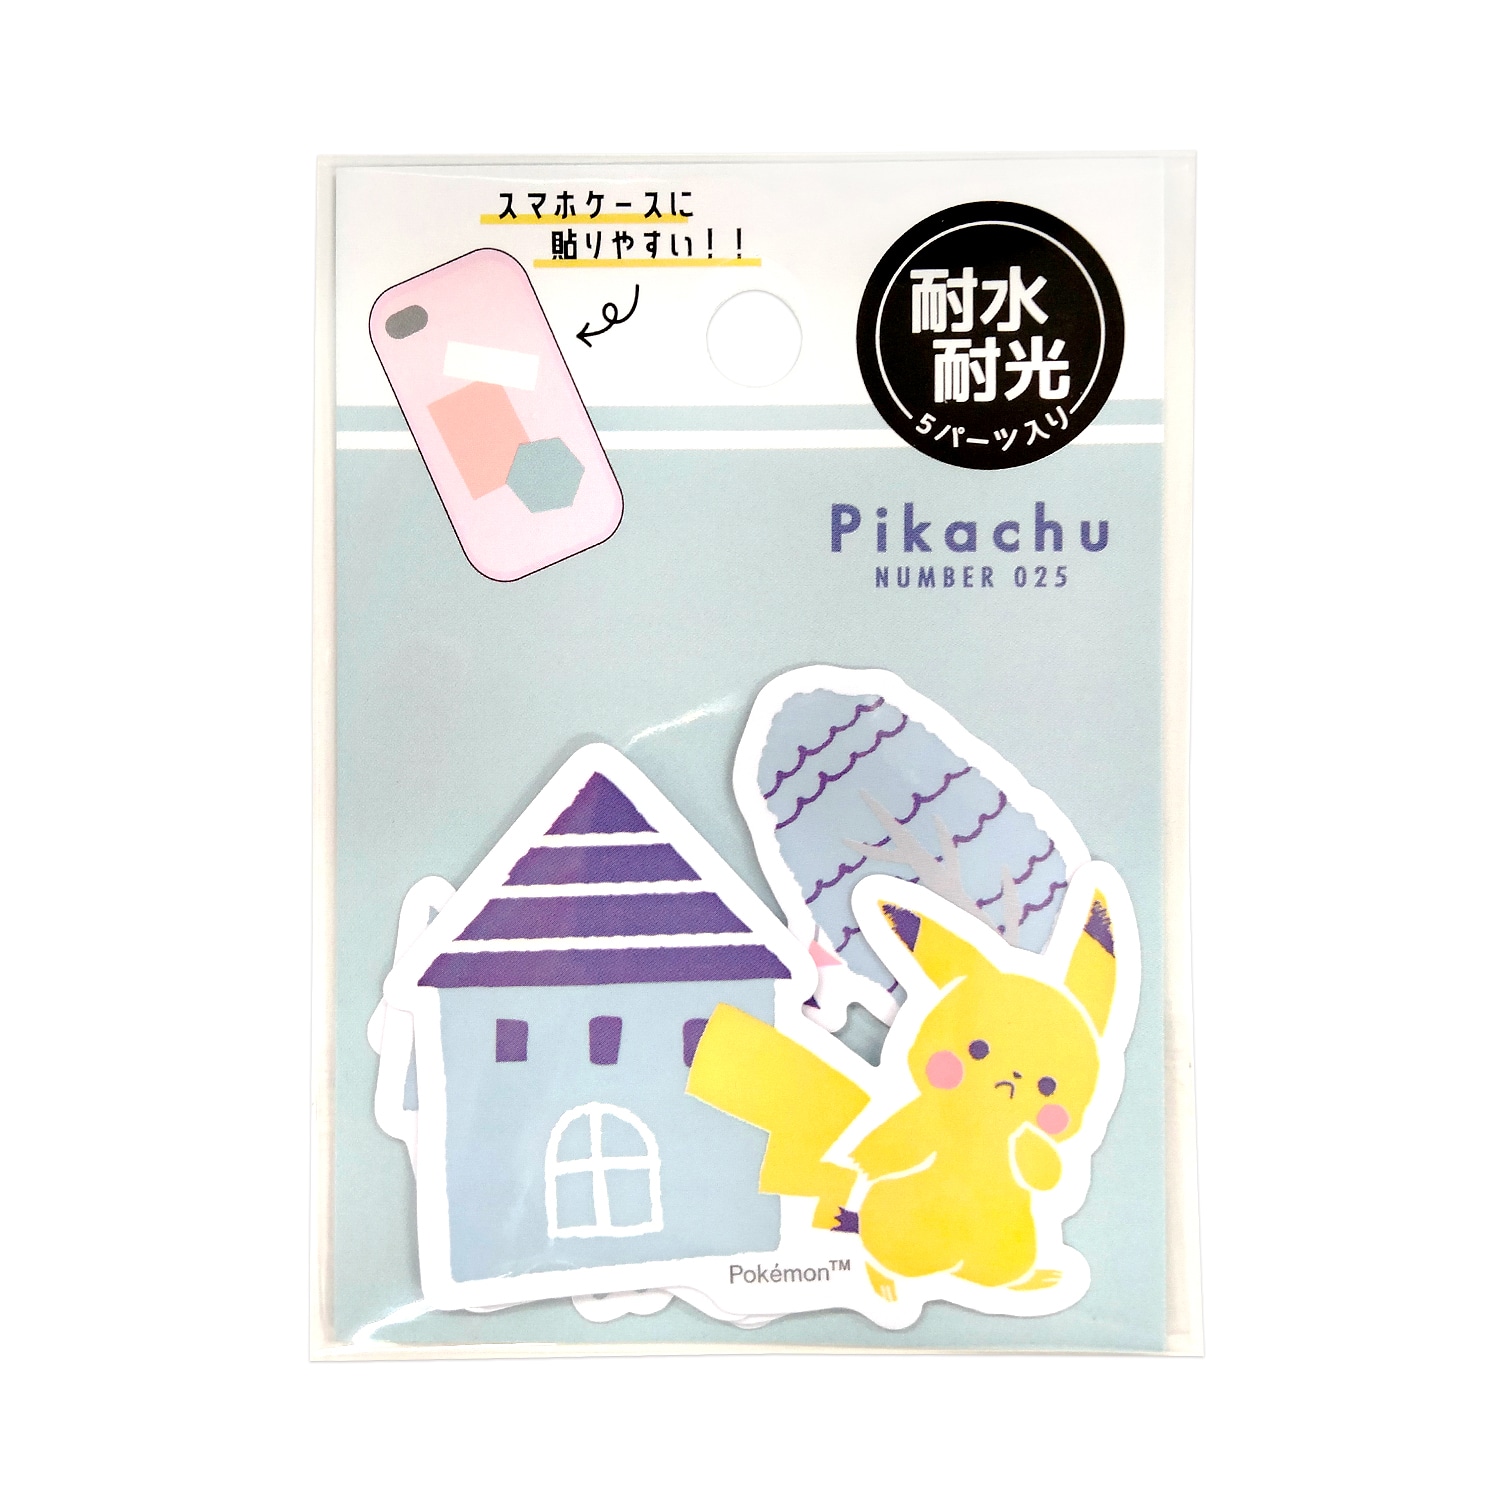 ミニデココラージュシール「Pikachu number025」ＨＯＵＳＥ